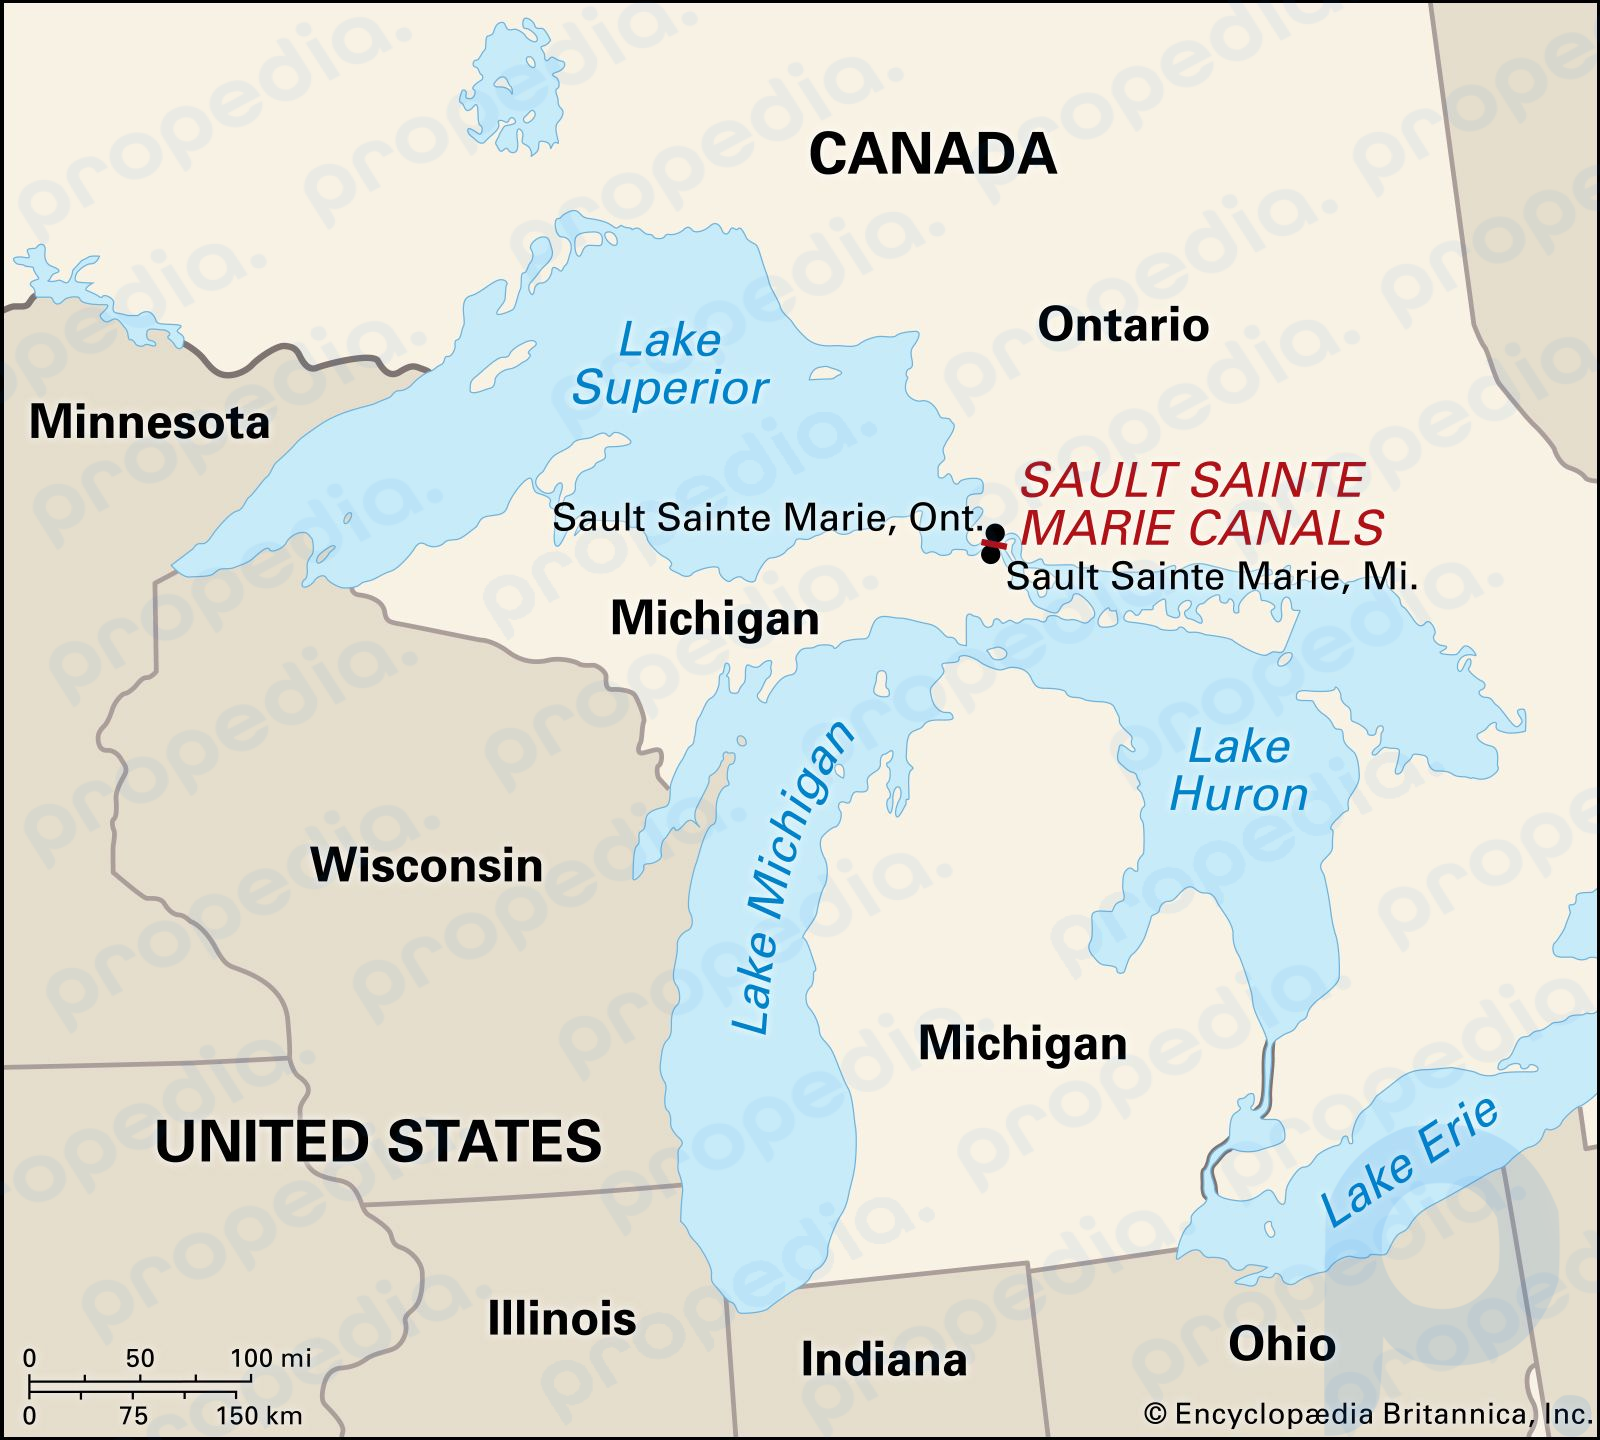 Су-Сент-Мари, штат Мичиган, расположен через реку Сент-Мэрис от города-побратима Су-Сент-Мари, Онтарио.